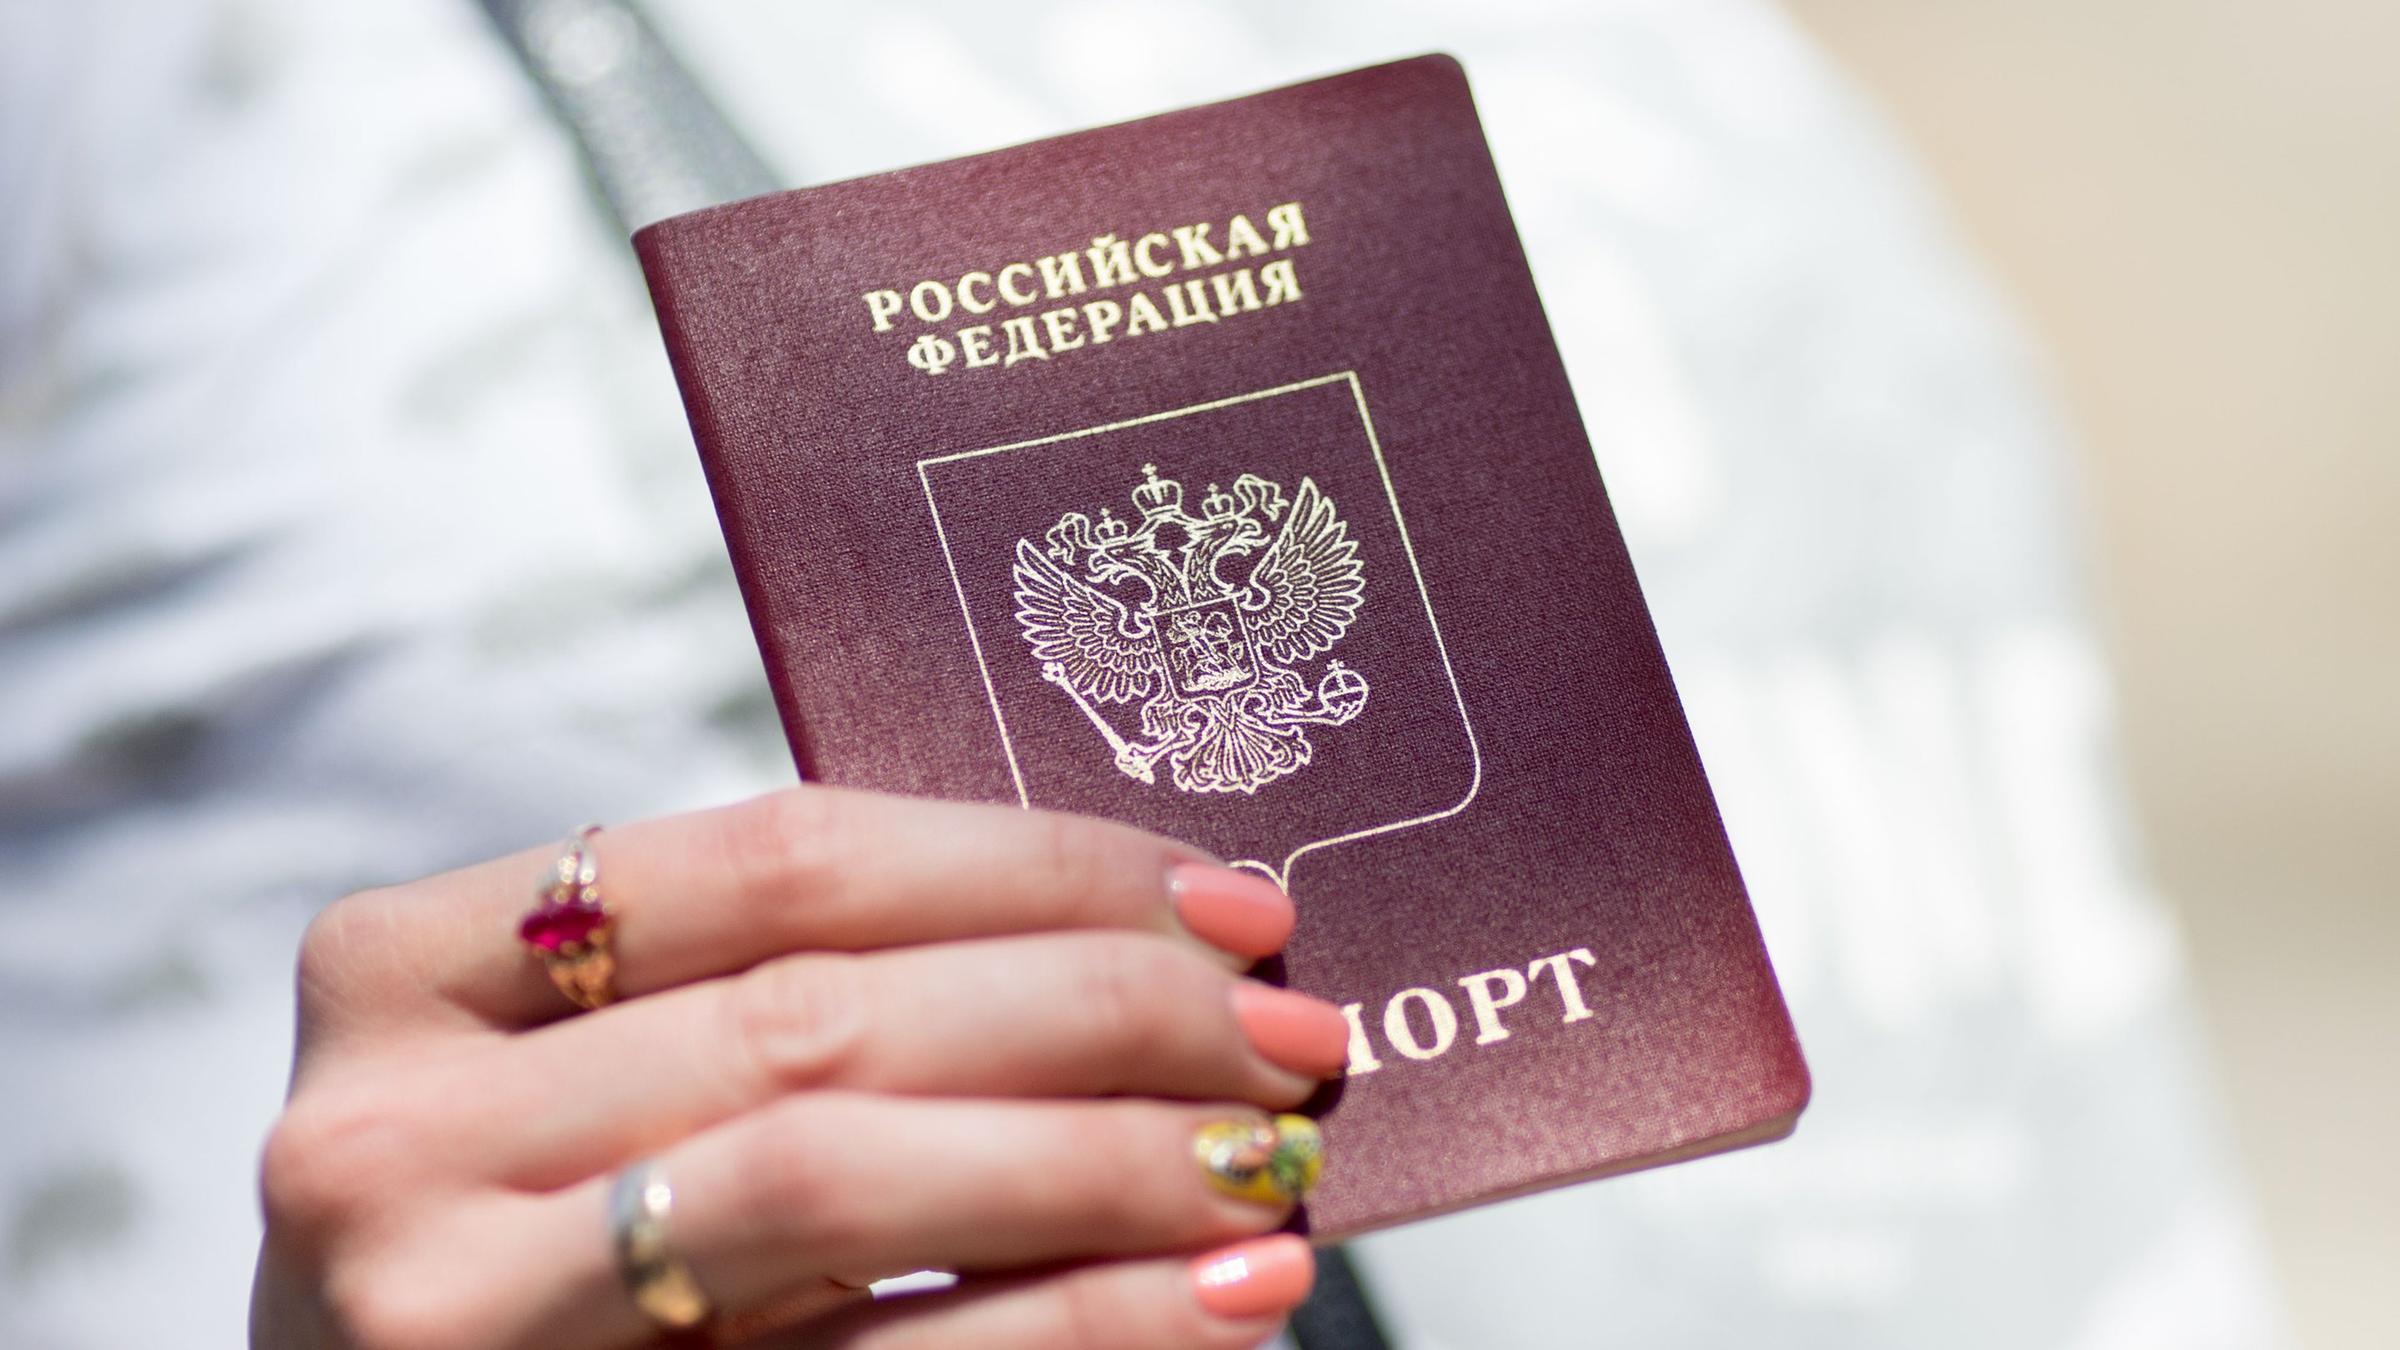 Abgelaufen russischer pass Russische Staatsangehoerigkeit,